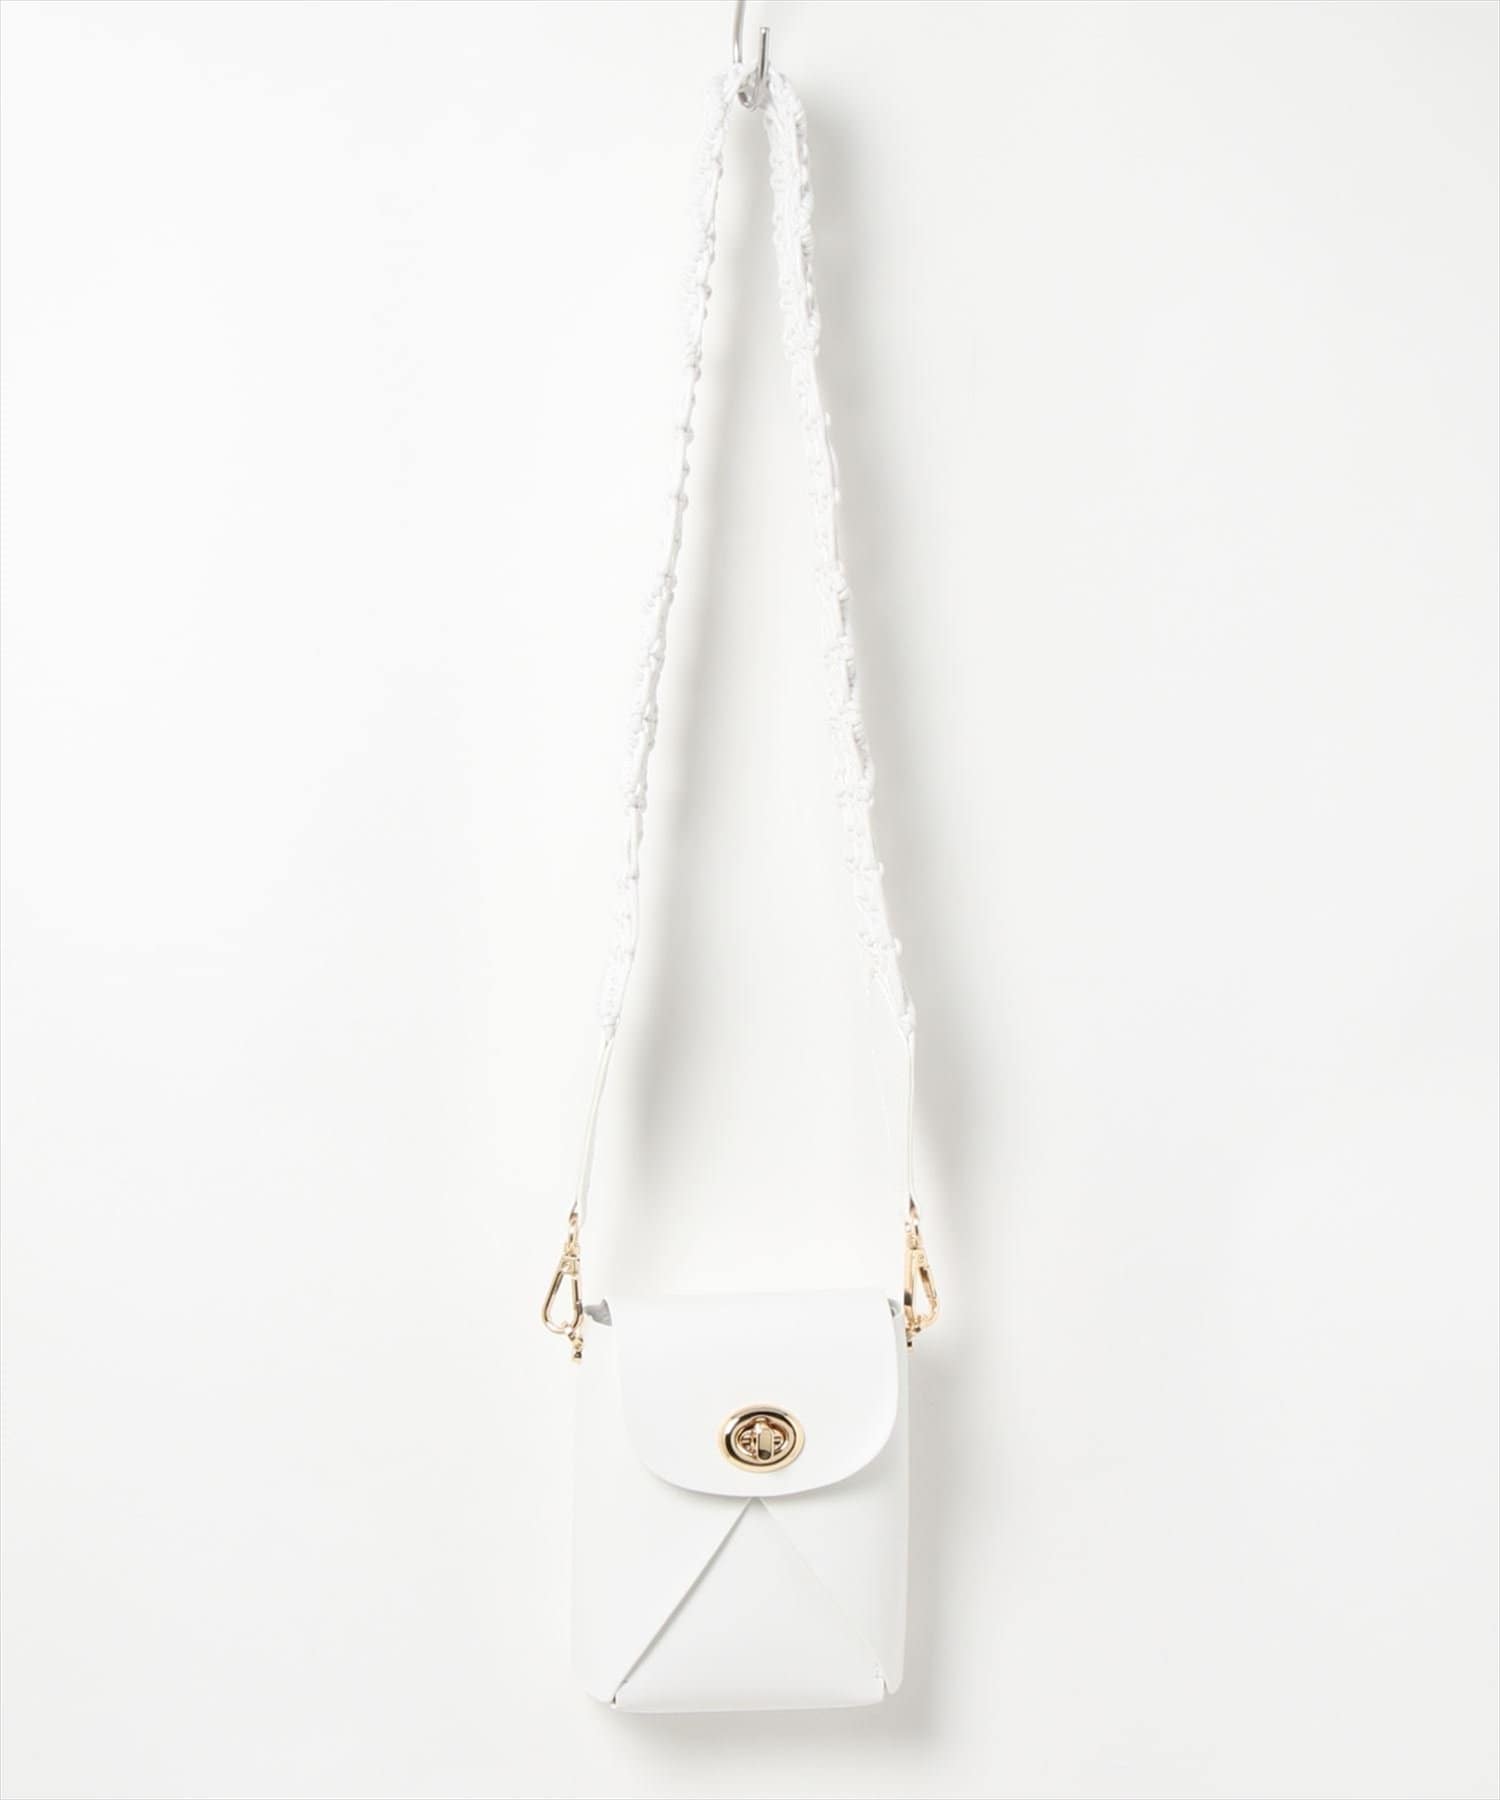 natural couture(ナチュラルクチュール) マクラメショルダースマホソルダーバッグ